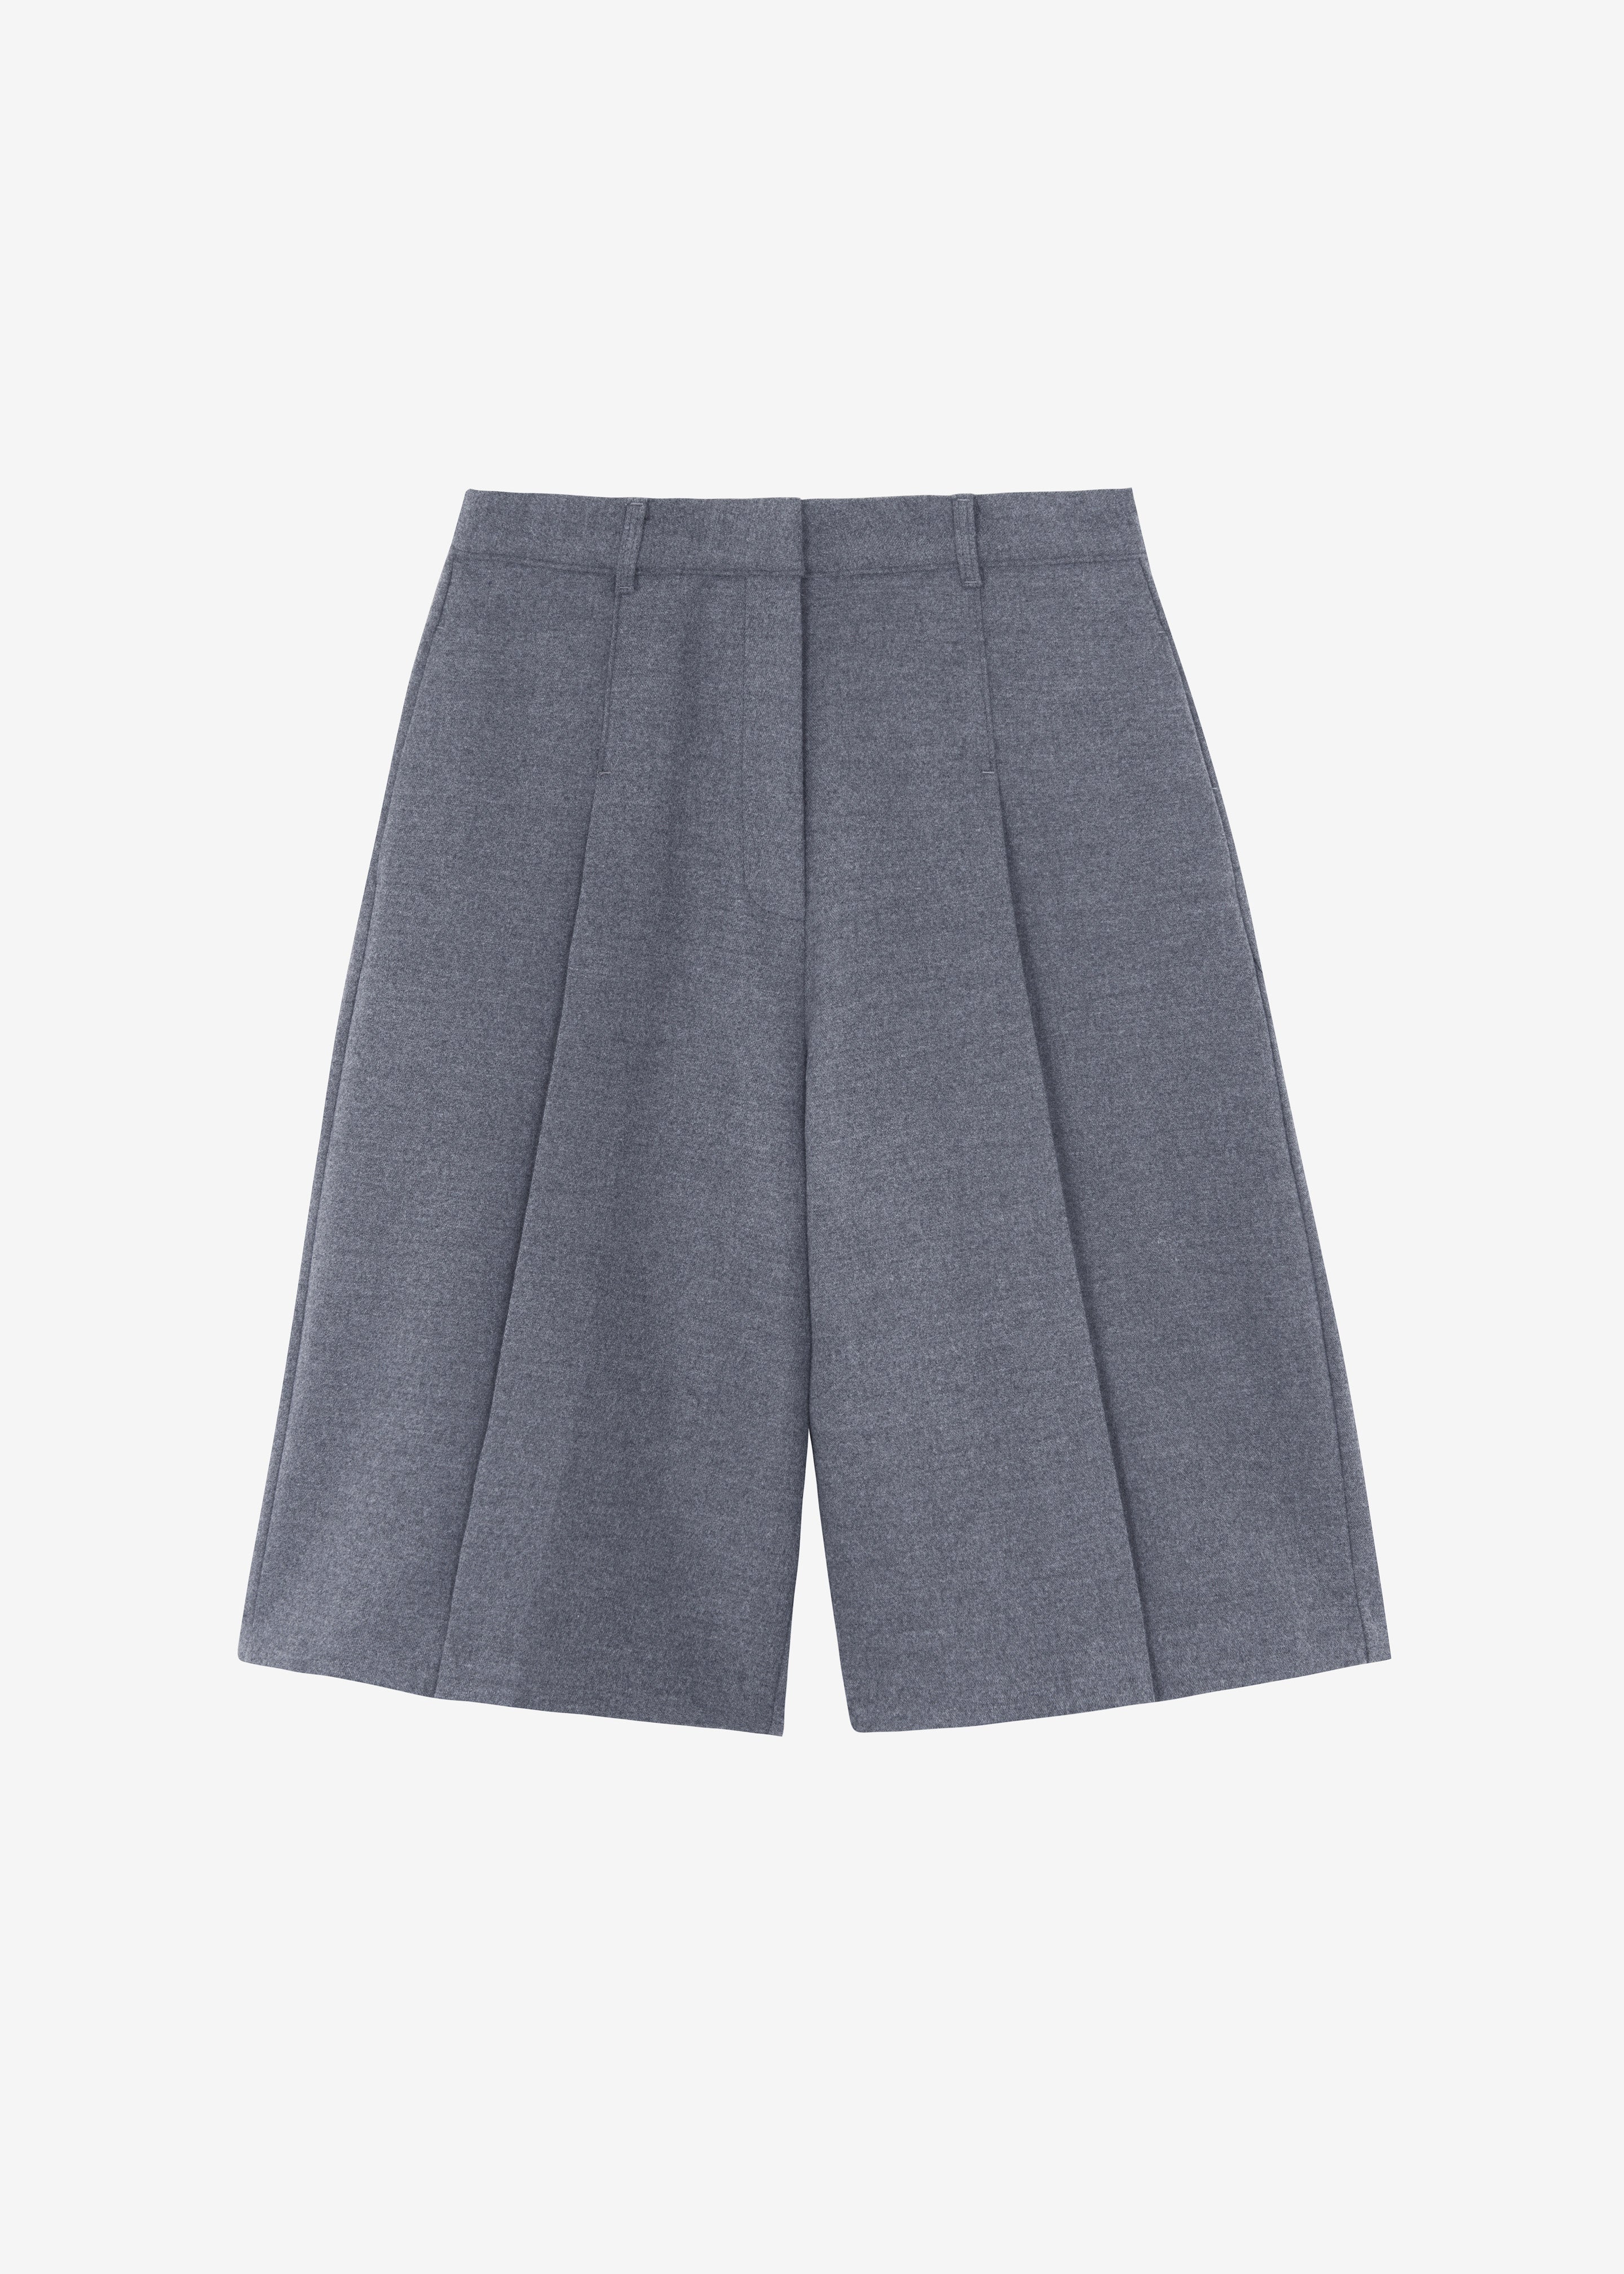 Austen Bermuda Shorts - Grey